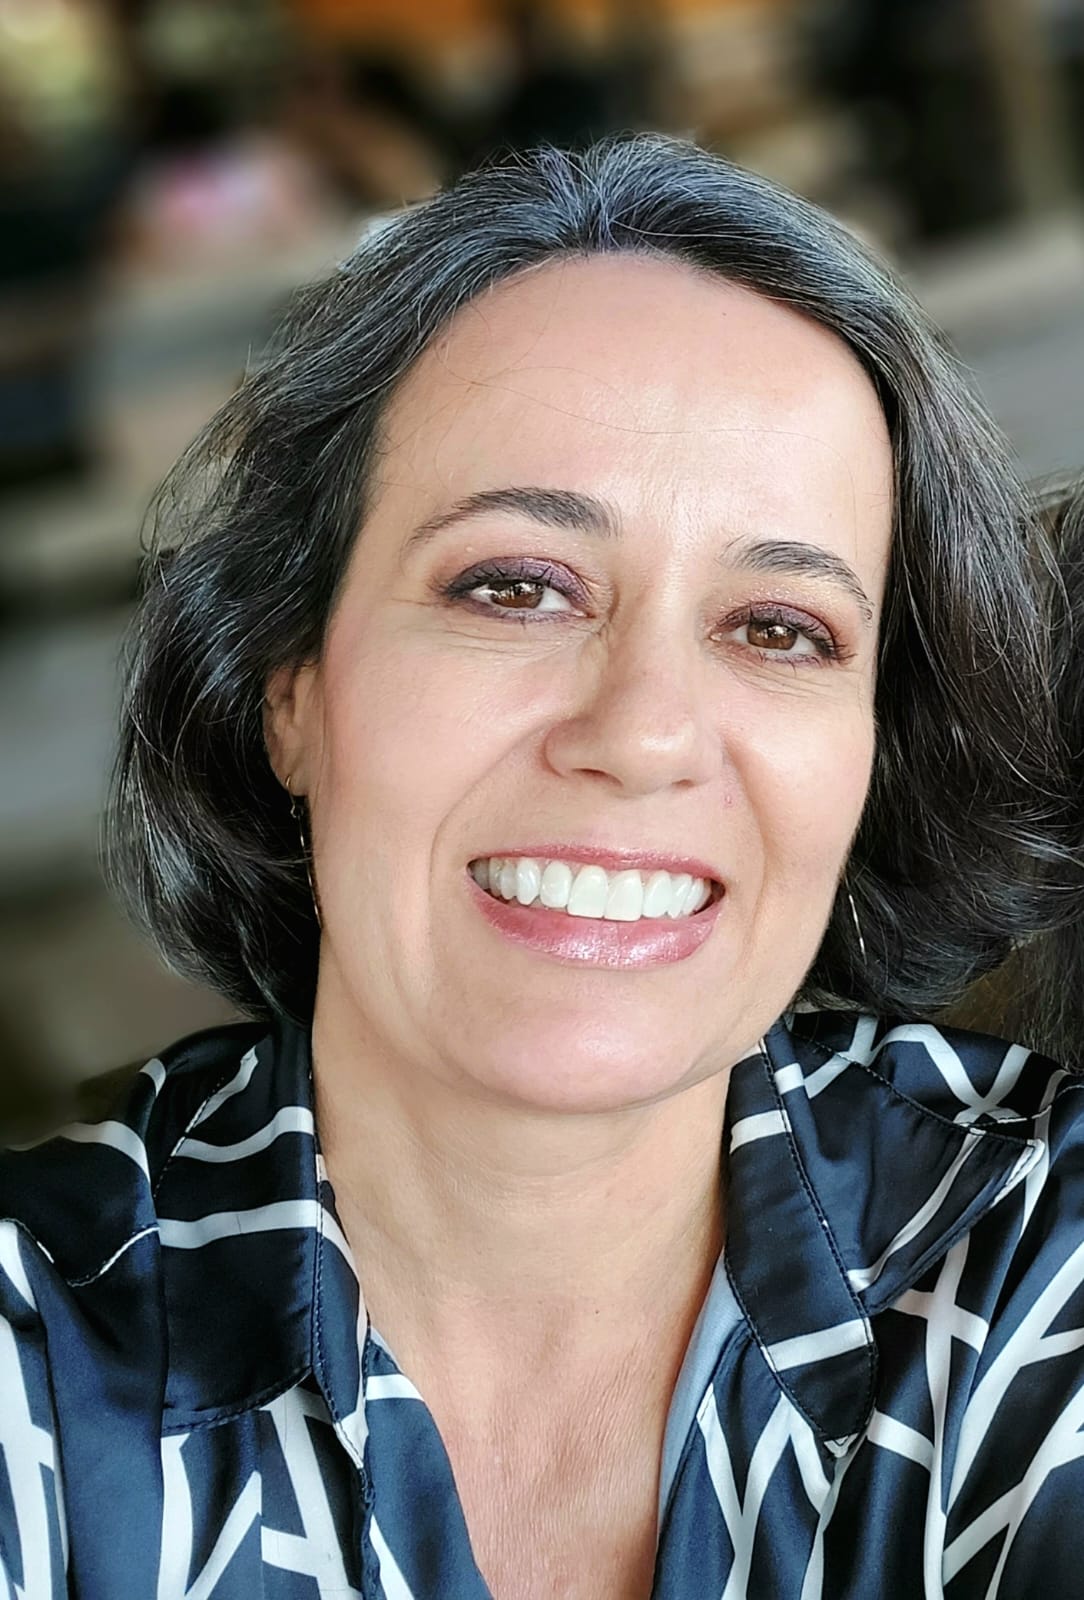 Assistente Episcopal Izabella Carvalho indica “Admirável mundo novo” na Dica Literária desta semana